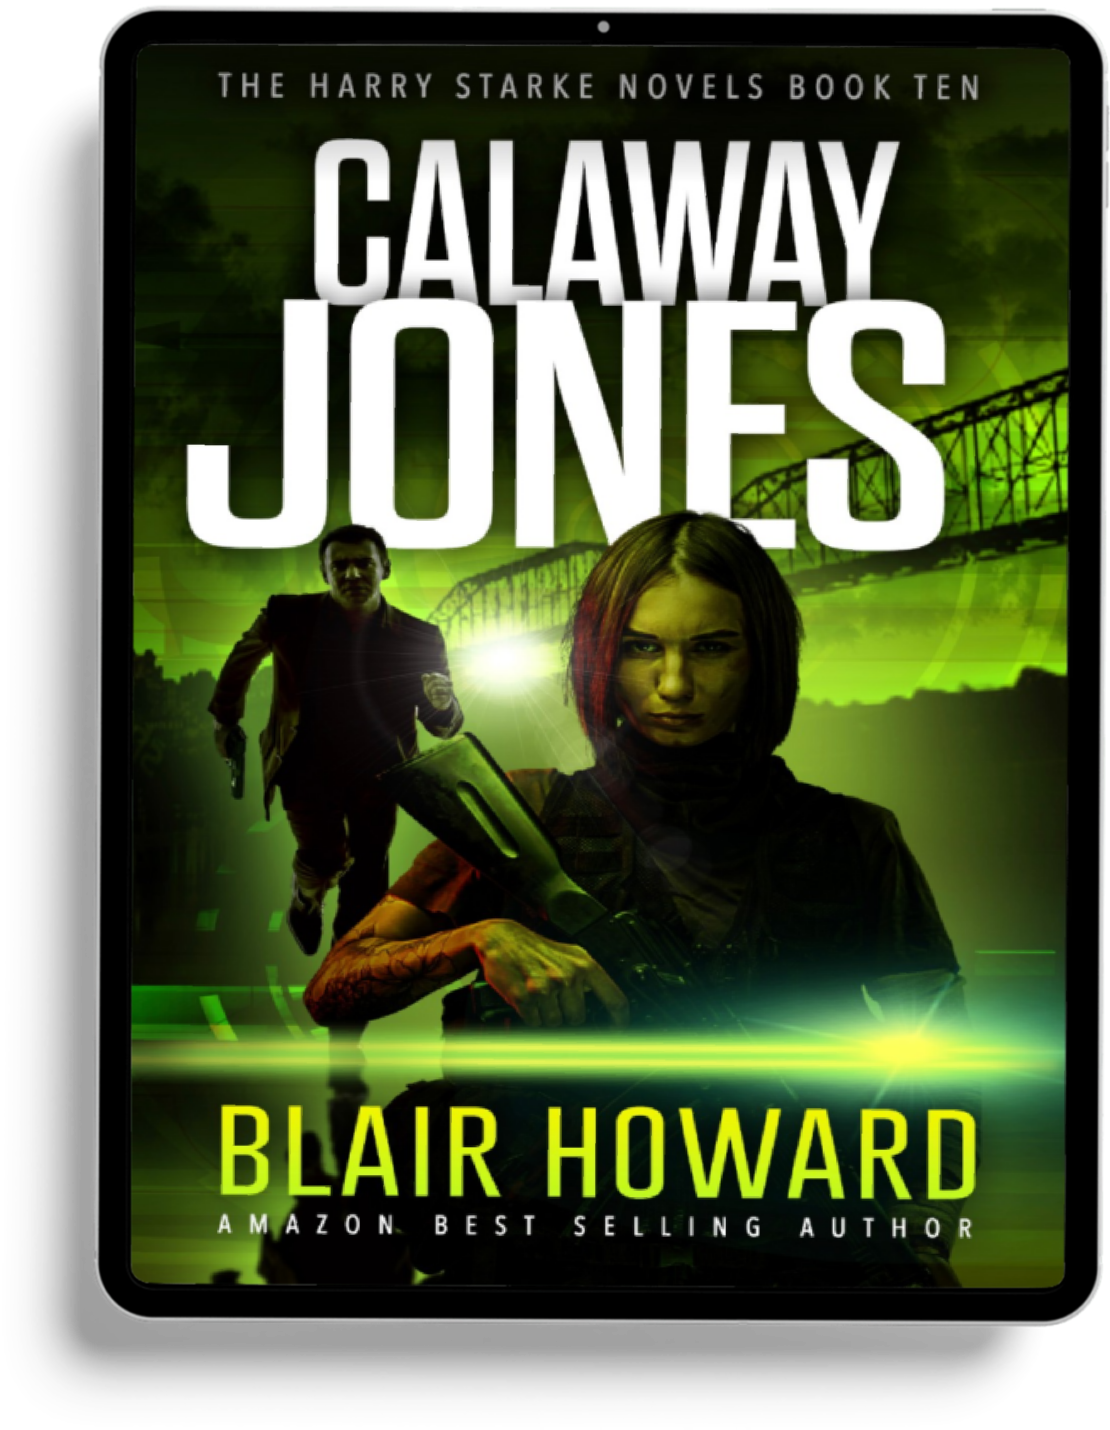 Calaway Jones (The Harry Starke Novels Book 10)